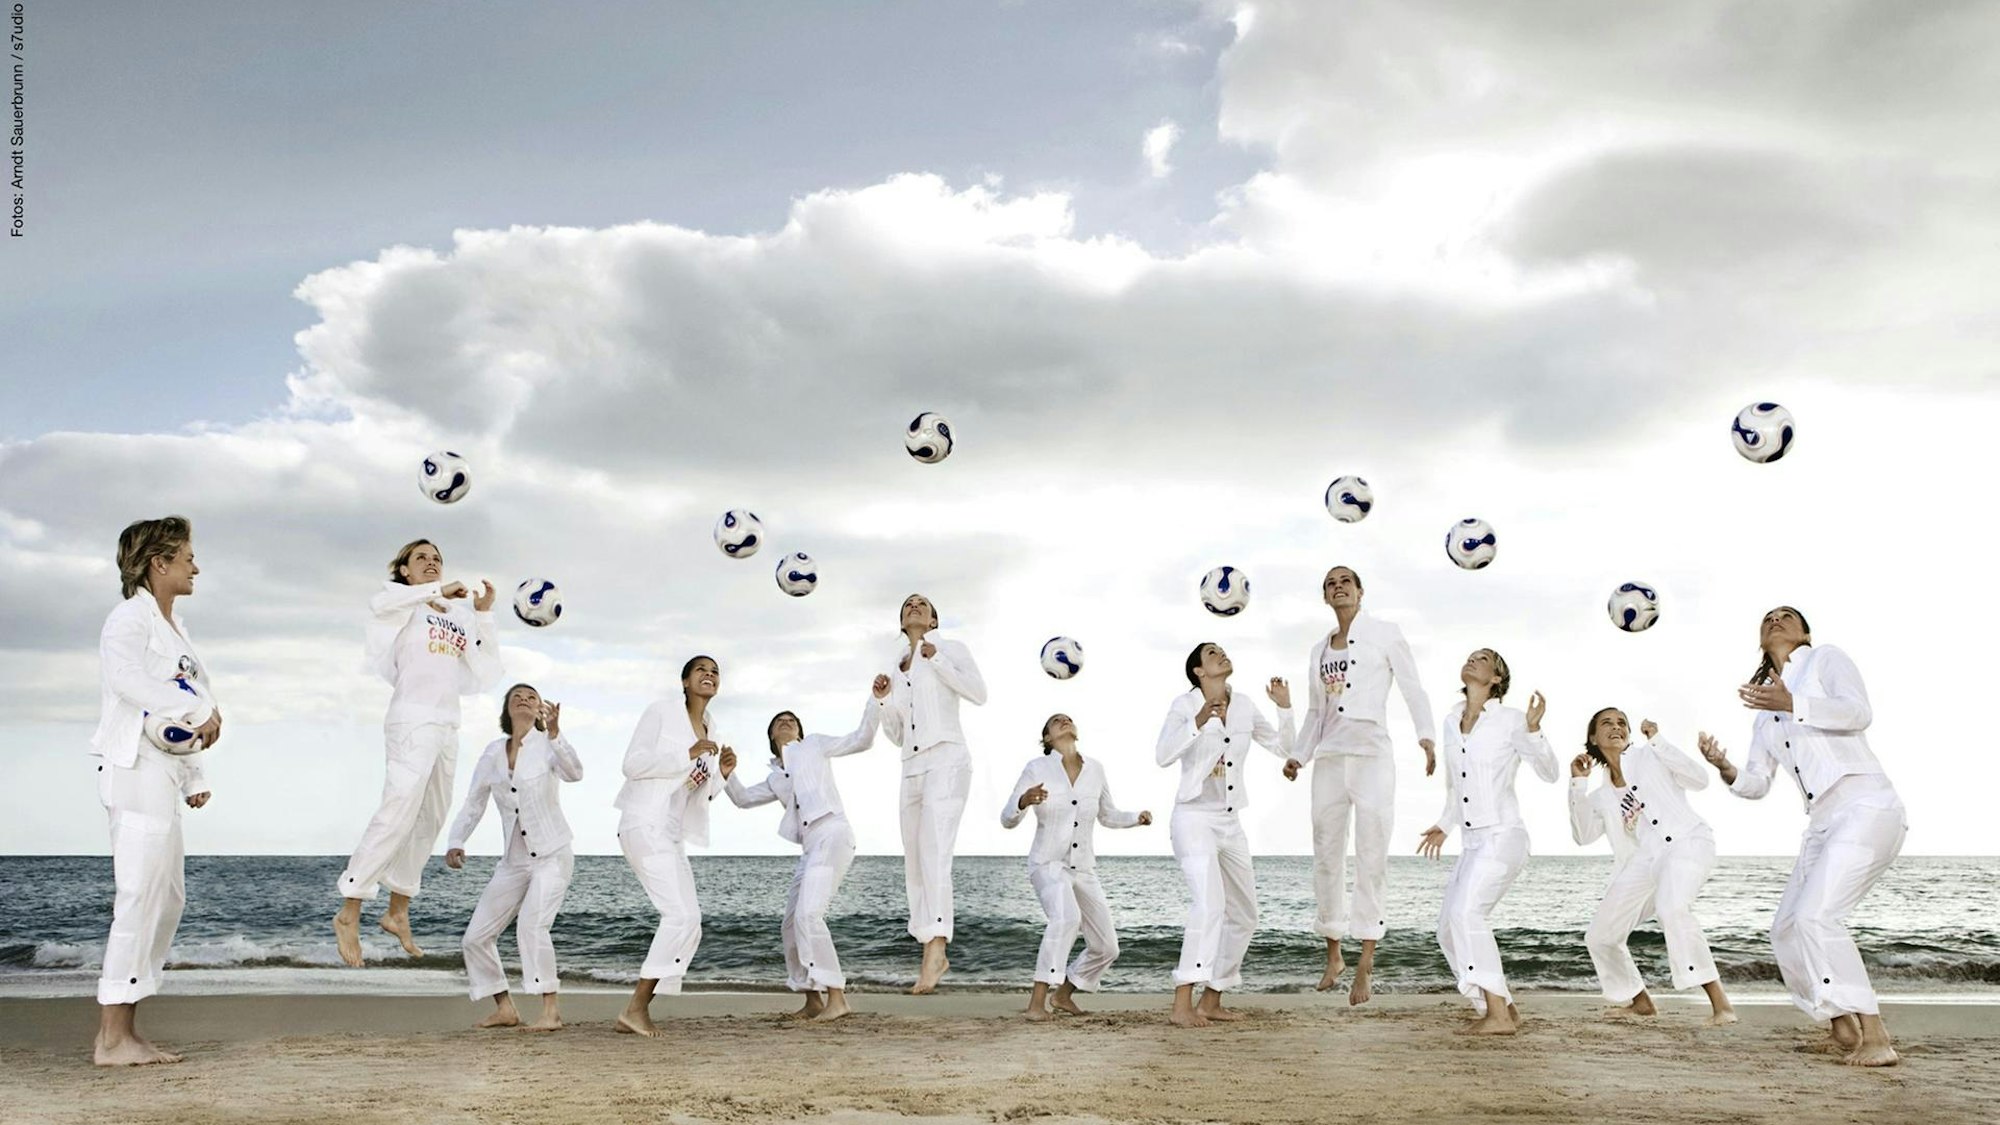 Frauen in weißen Anzügen werfen am Strand Fußbälle in die Luft